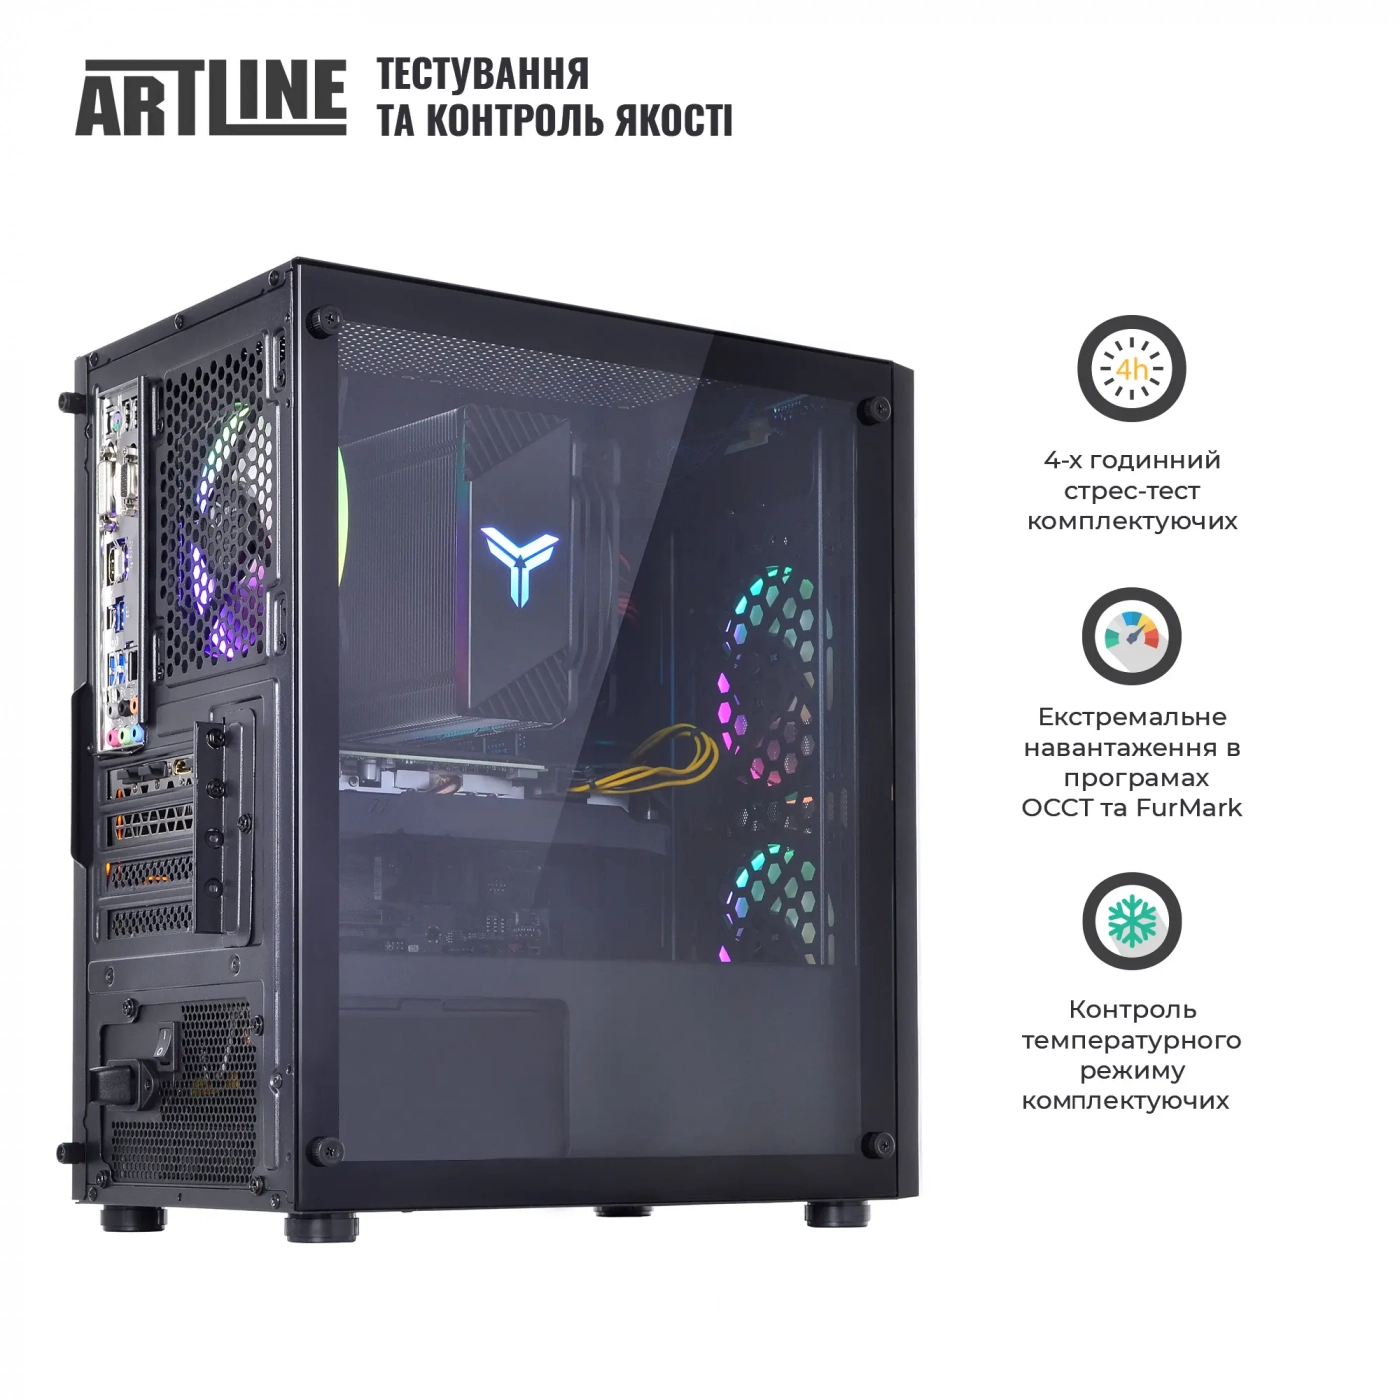 Купить Компьютер ARTLINE Gaming X61v14 - фото 8